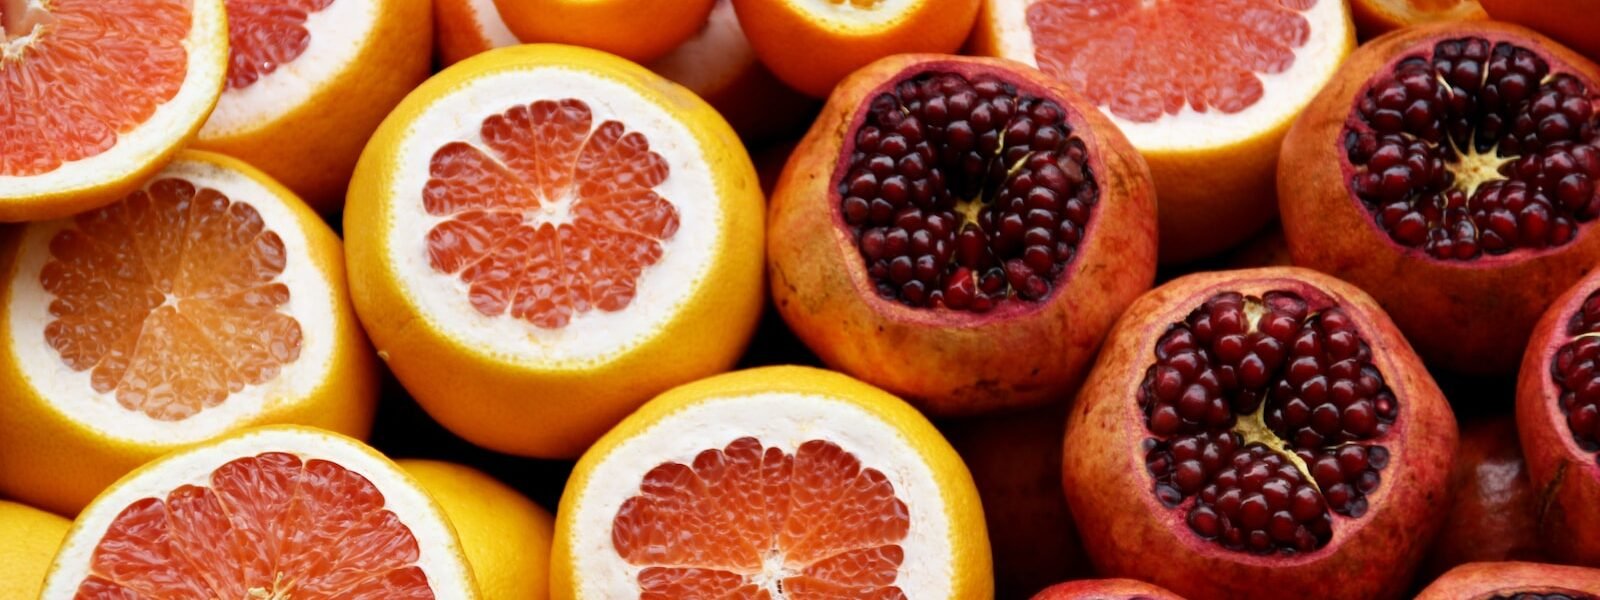 Pomegranate and orange fruits